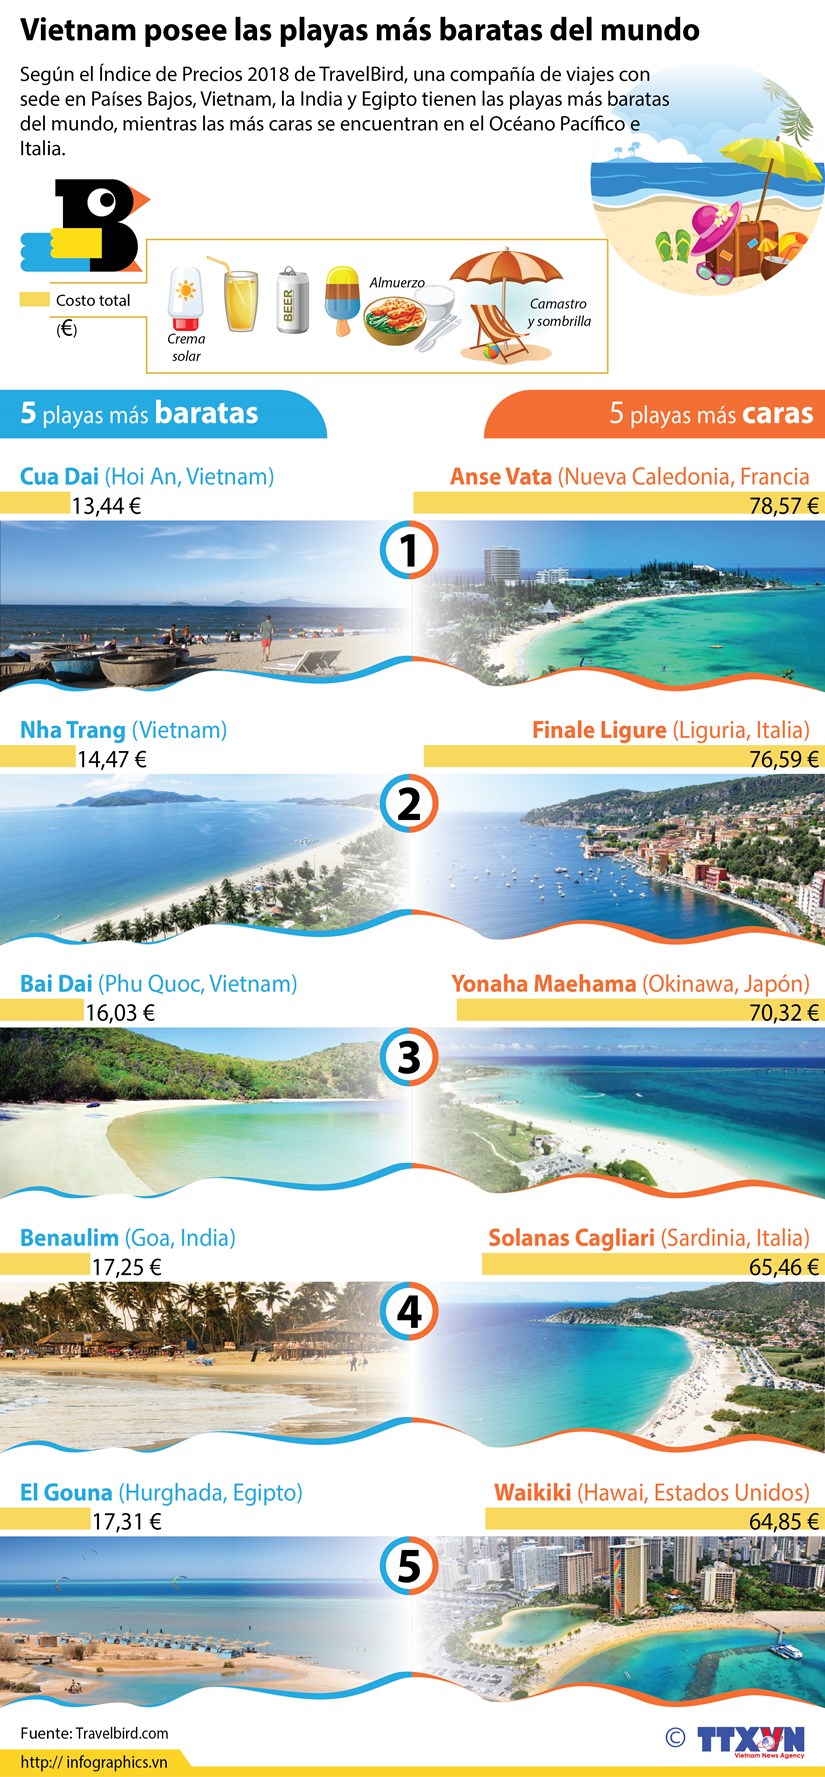 [Info] Vietnam posee las playas mas baratas del mundo hinh anh 1